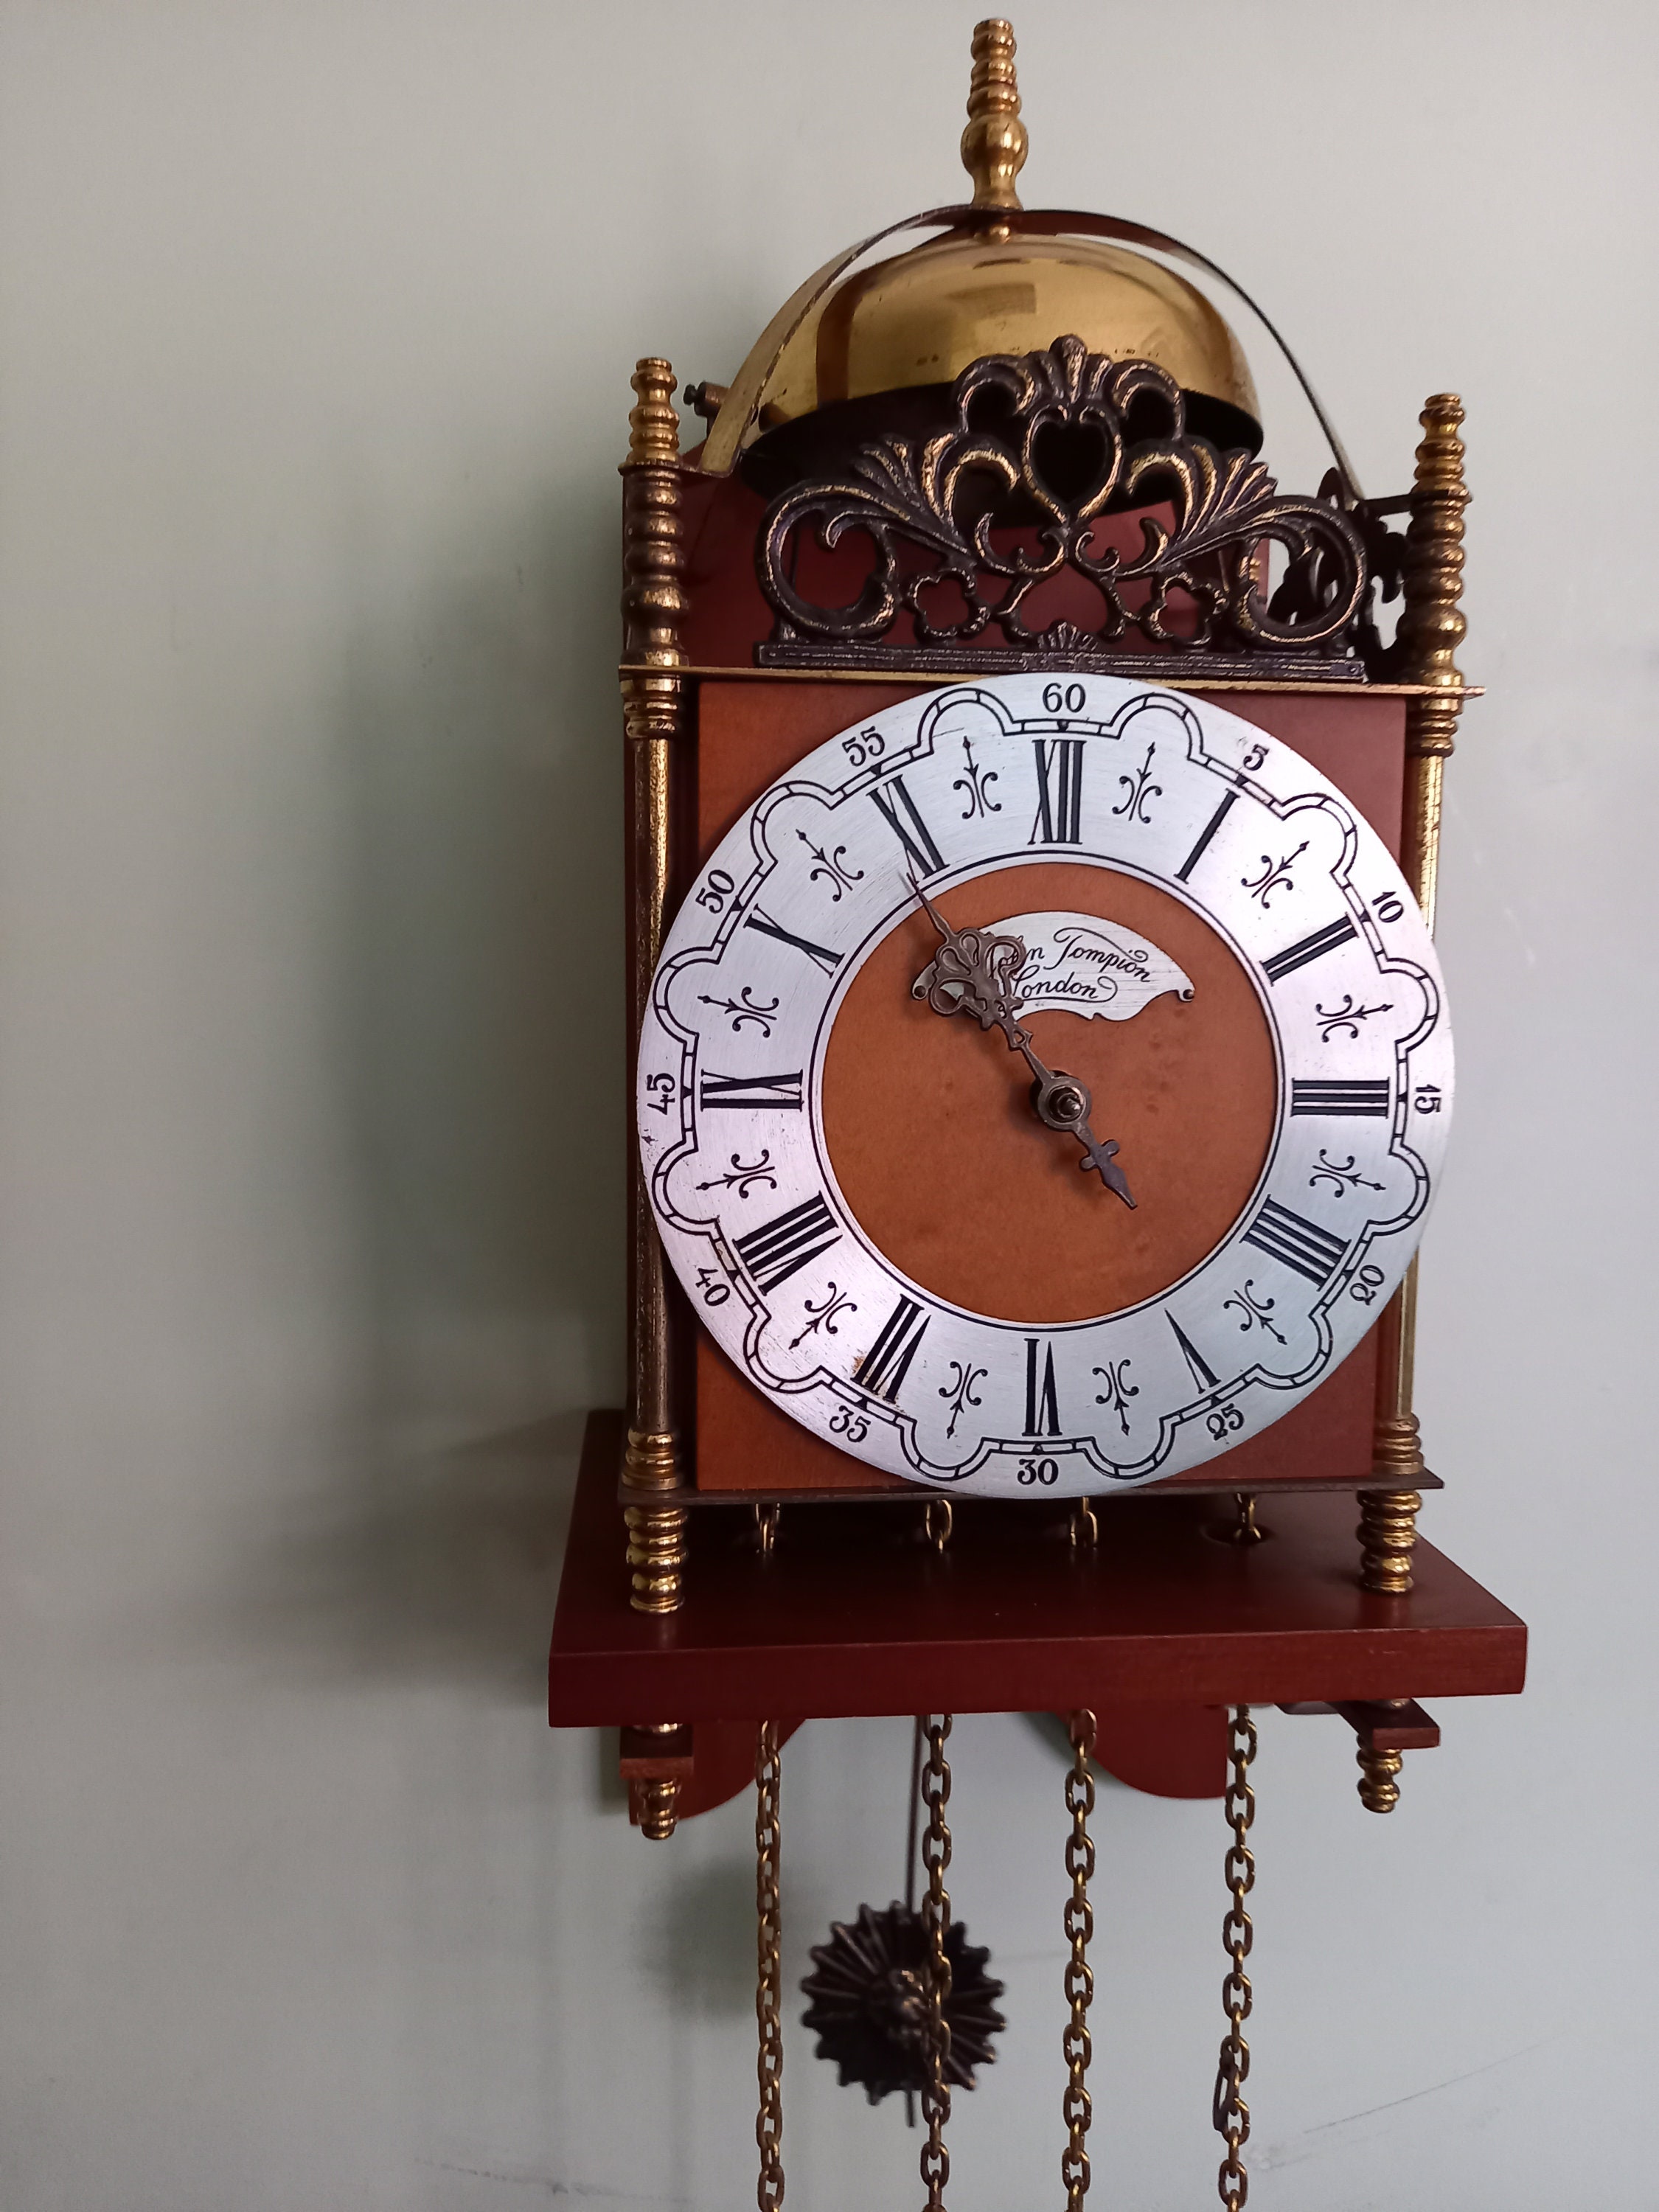  NauticaCollectical Reloj de pared de madera de latón antiguo de  16 pulgadas, estilo vintage antiguo, reloj de pared redondo decorativo de  estilo moderno y simple para el hogar, oficina, escuela, cocina